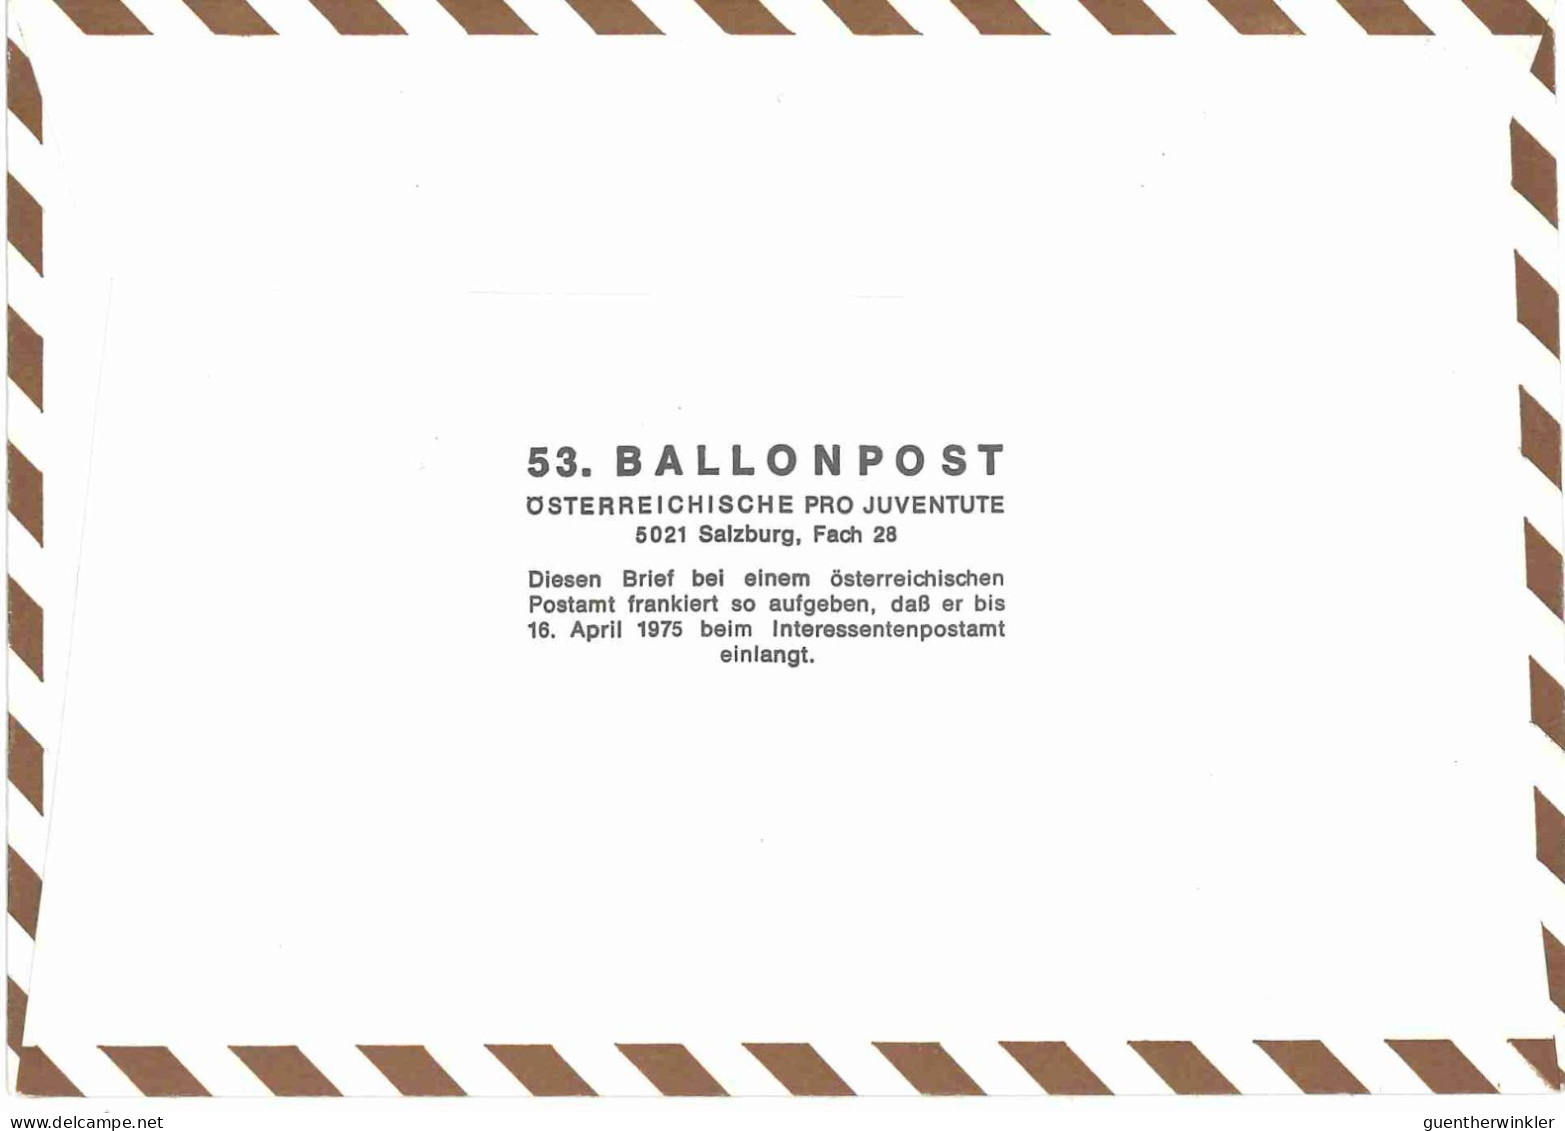 Regulärer Ballonpostflug Nr. 53a Der Pro Juventute [RBP53a] - Par Ballon